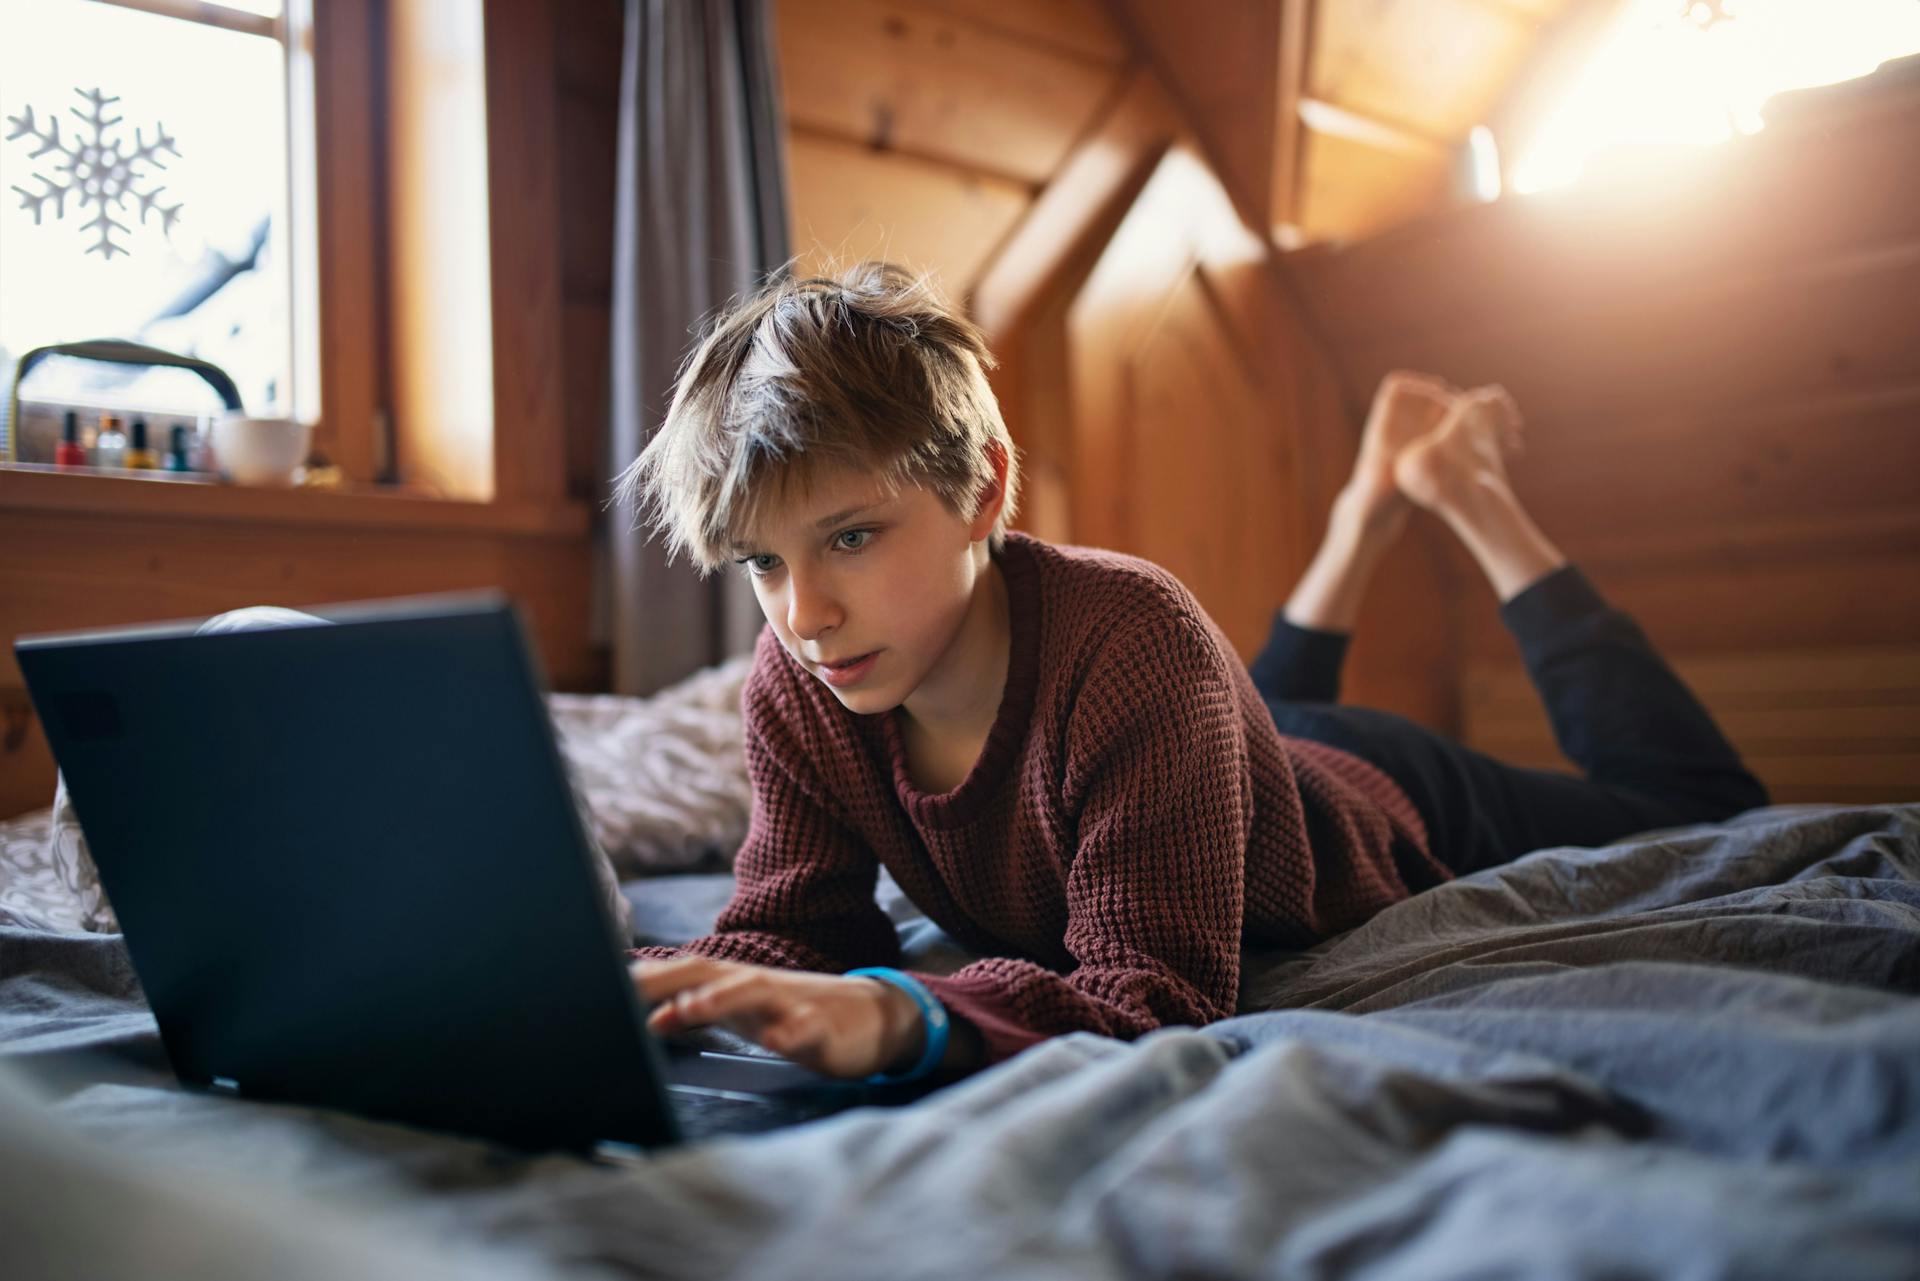 Ung dreng ligger i seng og kigger på computerskærm.